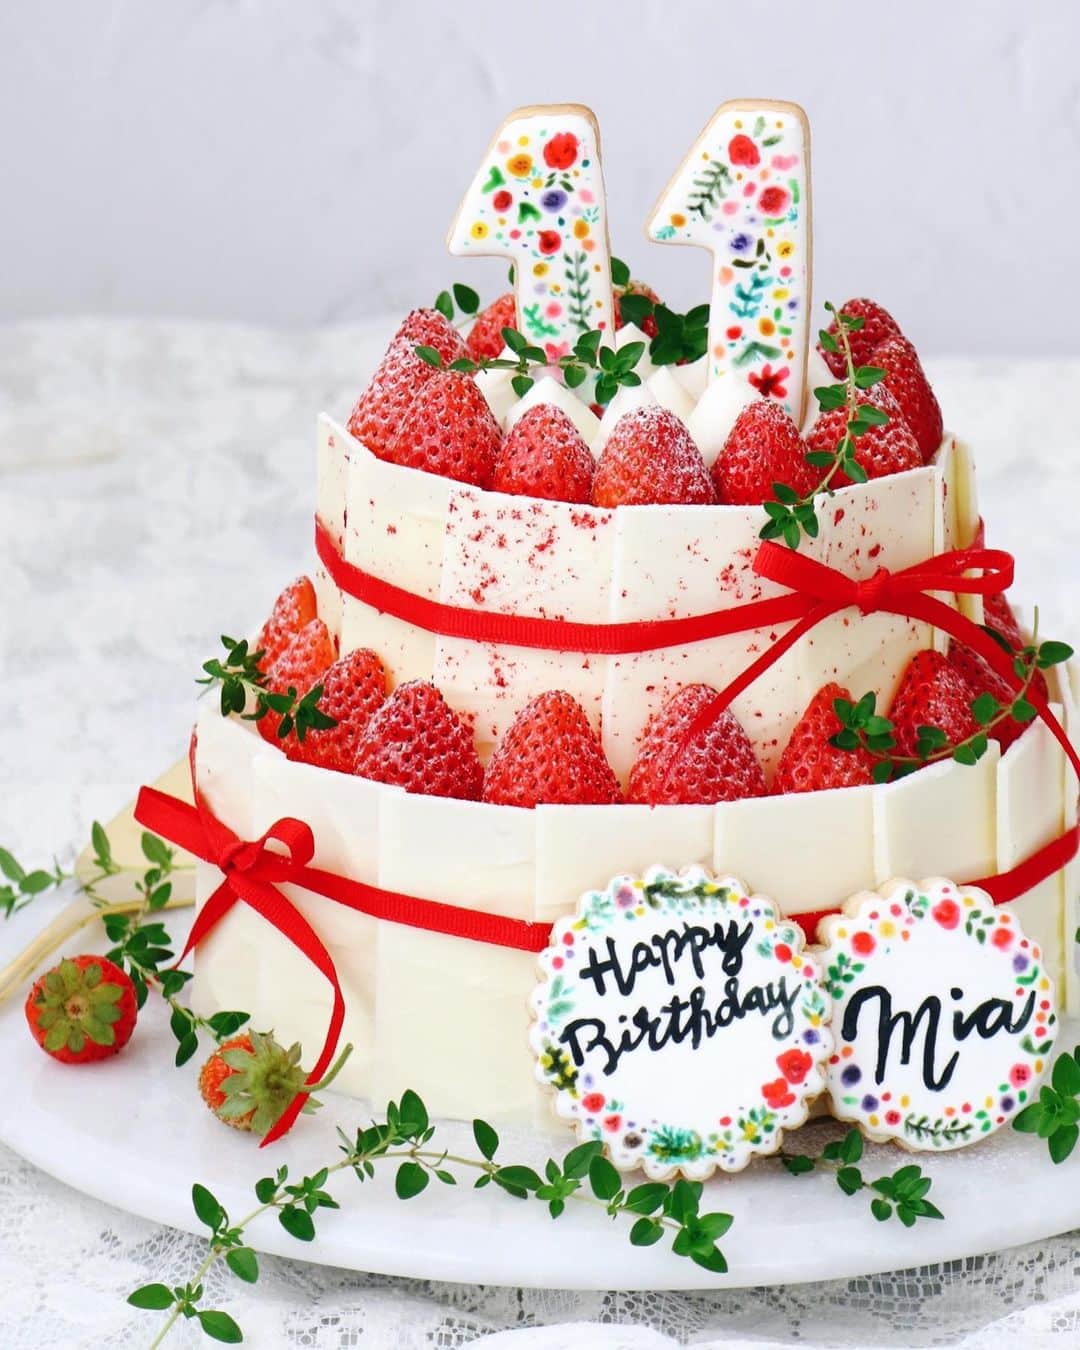 mamiaoyagiのインスタグラム：「𓍯◌ 𝑭𝒐𝒓 𝒎𝒚 𝒅𝒂𝒖𝒈𝒉𝒕𝒆𝒓’𝒔 𝒕𝒉 𝒃𝒊𝒓𝒕𝒉𝒅𝒂𝒚. ◌ 𓊰 ◌ 娘の11歳の誕生日。 段々ケーキが憧れと言っていたので2段のティアードケーキを♪ 今年は自分用のミニケーキ&クッキーも作成した娘。 ウィークエンドも重なったため連日お祝いが続き、かなりハッピーなバースデイになったかと❤︎ ◌ 𝑯𝒂𝒑𝒑𝒚 𝑩𝒊𝒓𝒕𝒉𝒅𝒂𝒚⋆ ◌ #birthdaycake #birthday #shortcake #tieredcake #誕生日 #誕生日ケーキ #thebakefeed #mywilliamssonoma #feedfeed #wiltoncakes #marthabakes #food52 #instafood」